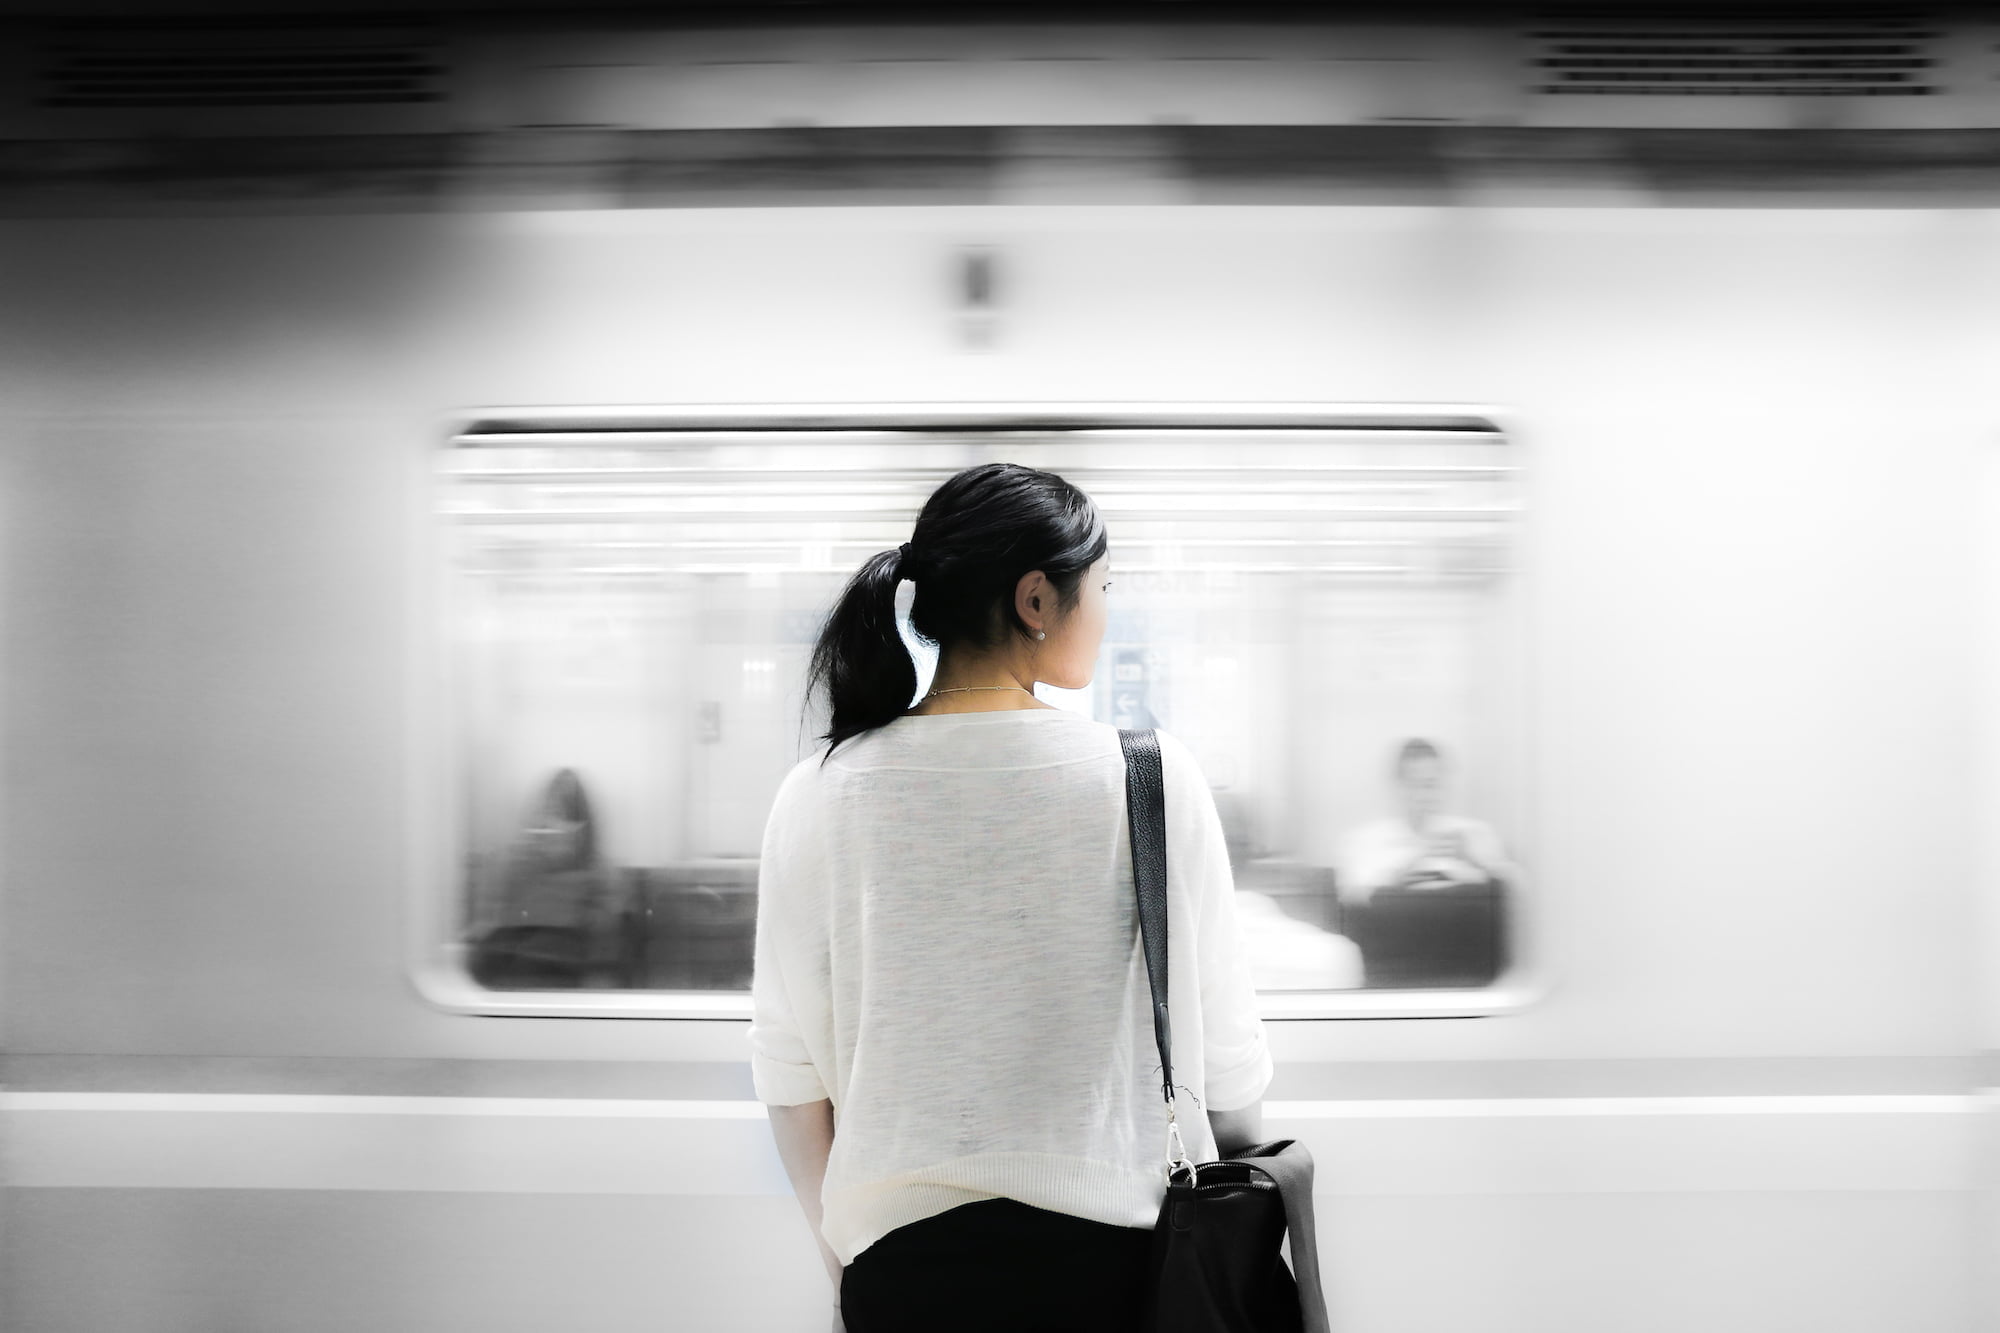 台灣高鐵5月27日第二階段車次異動短期時刻表出爐 train underground subway person